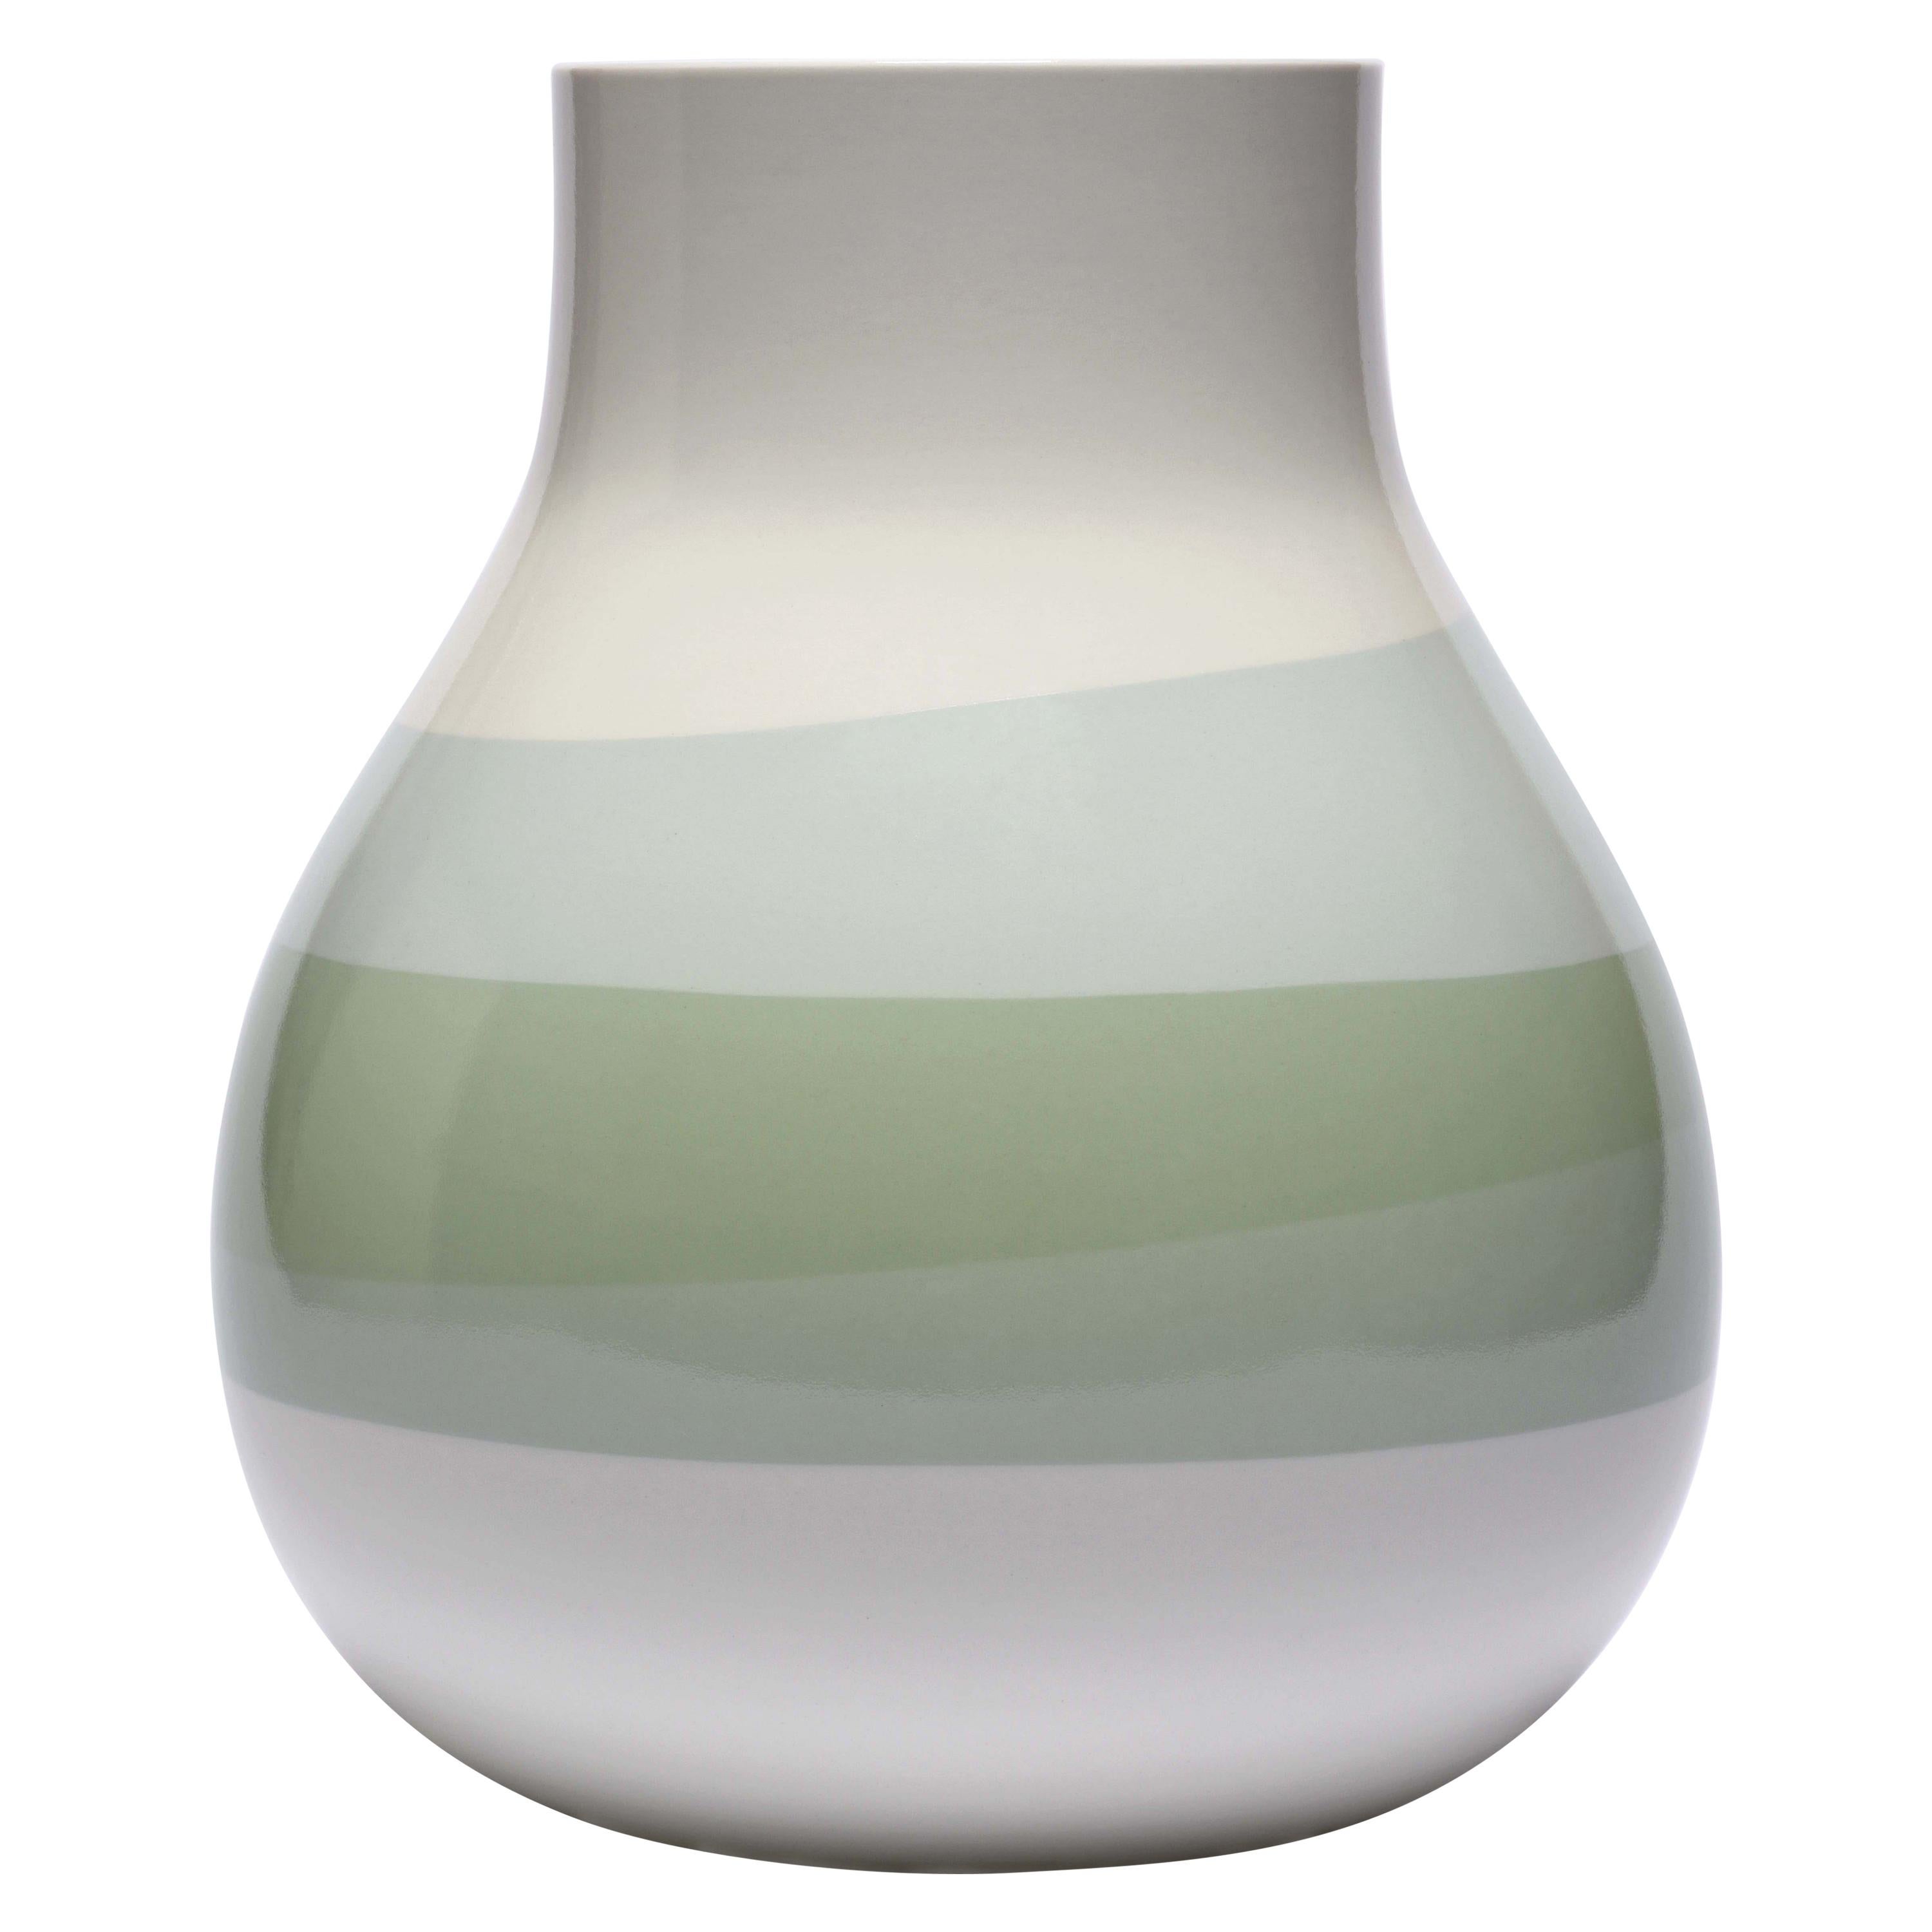 Scholten & Baijings 3.3 Bis Vase in Porcelain by Manufacture Nationale de Sèvres For Sale